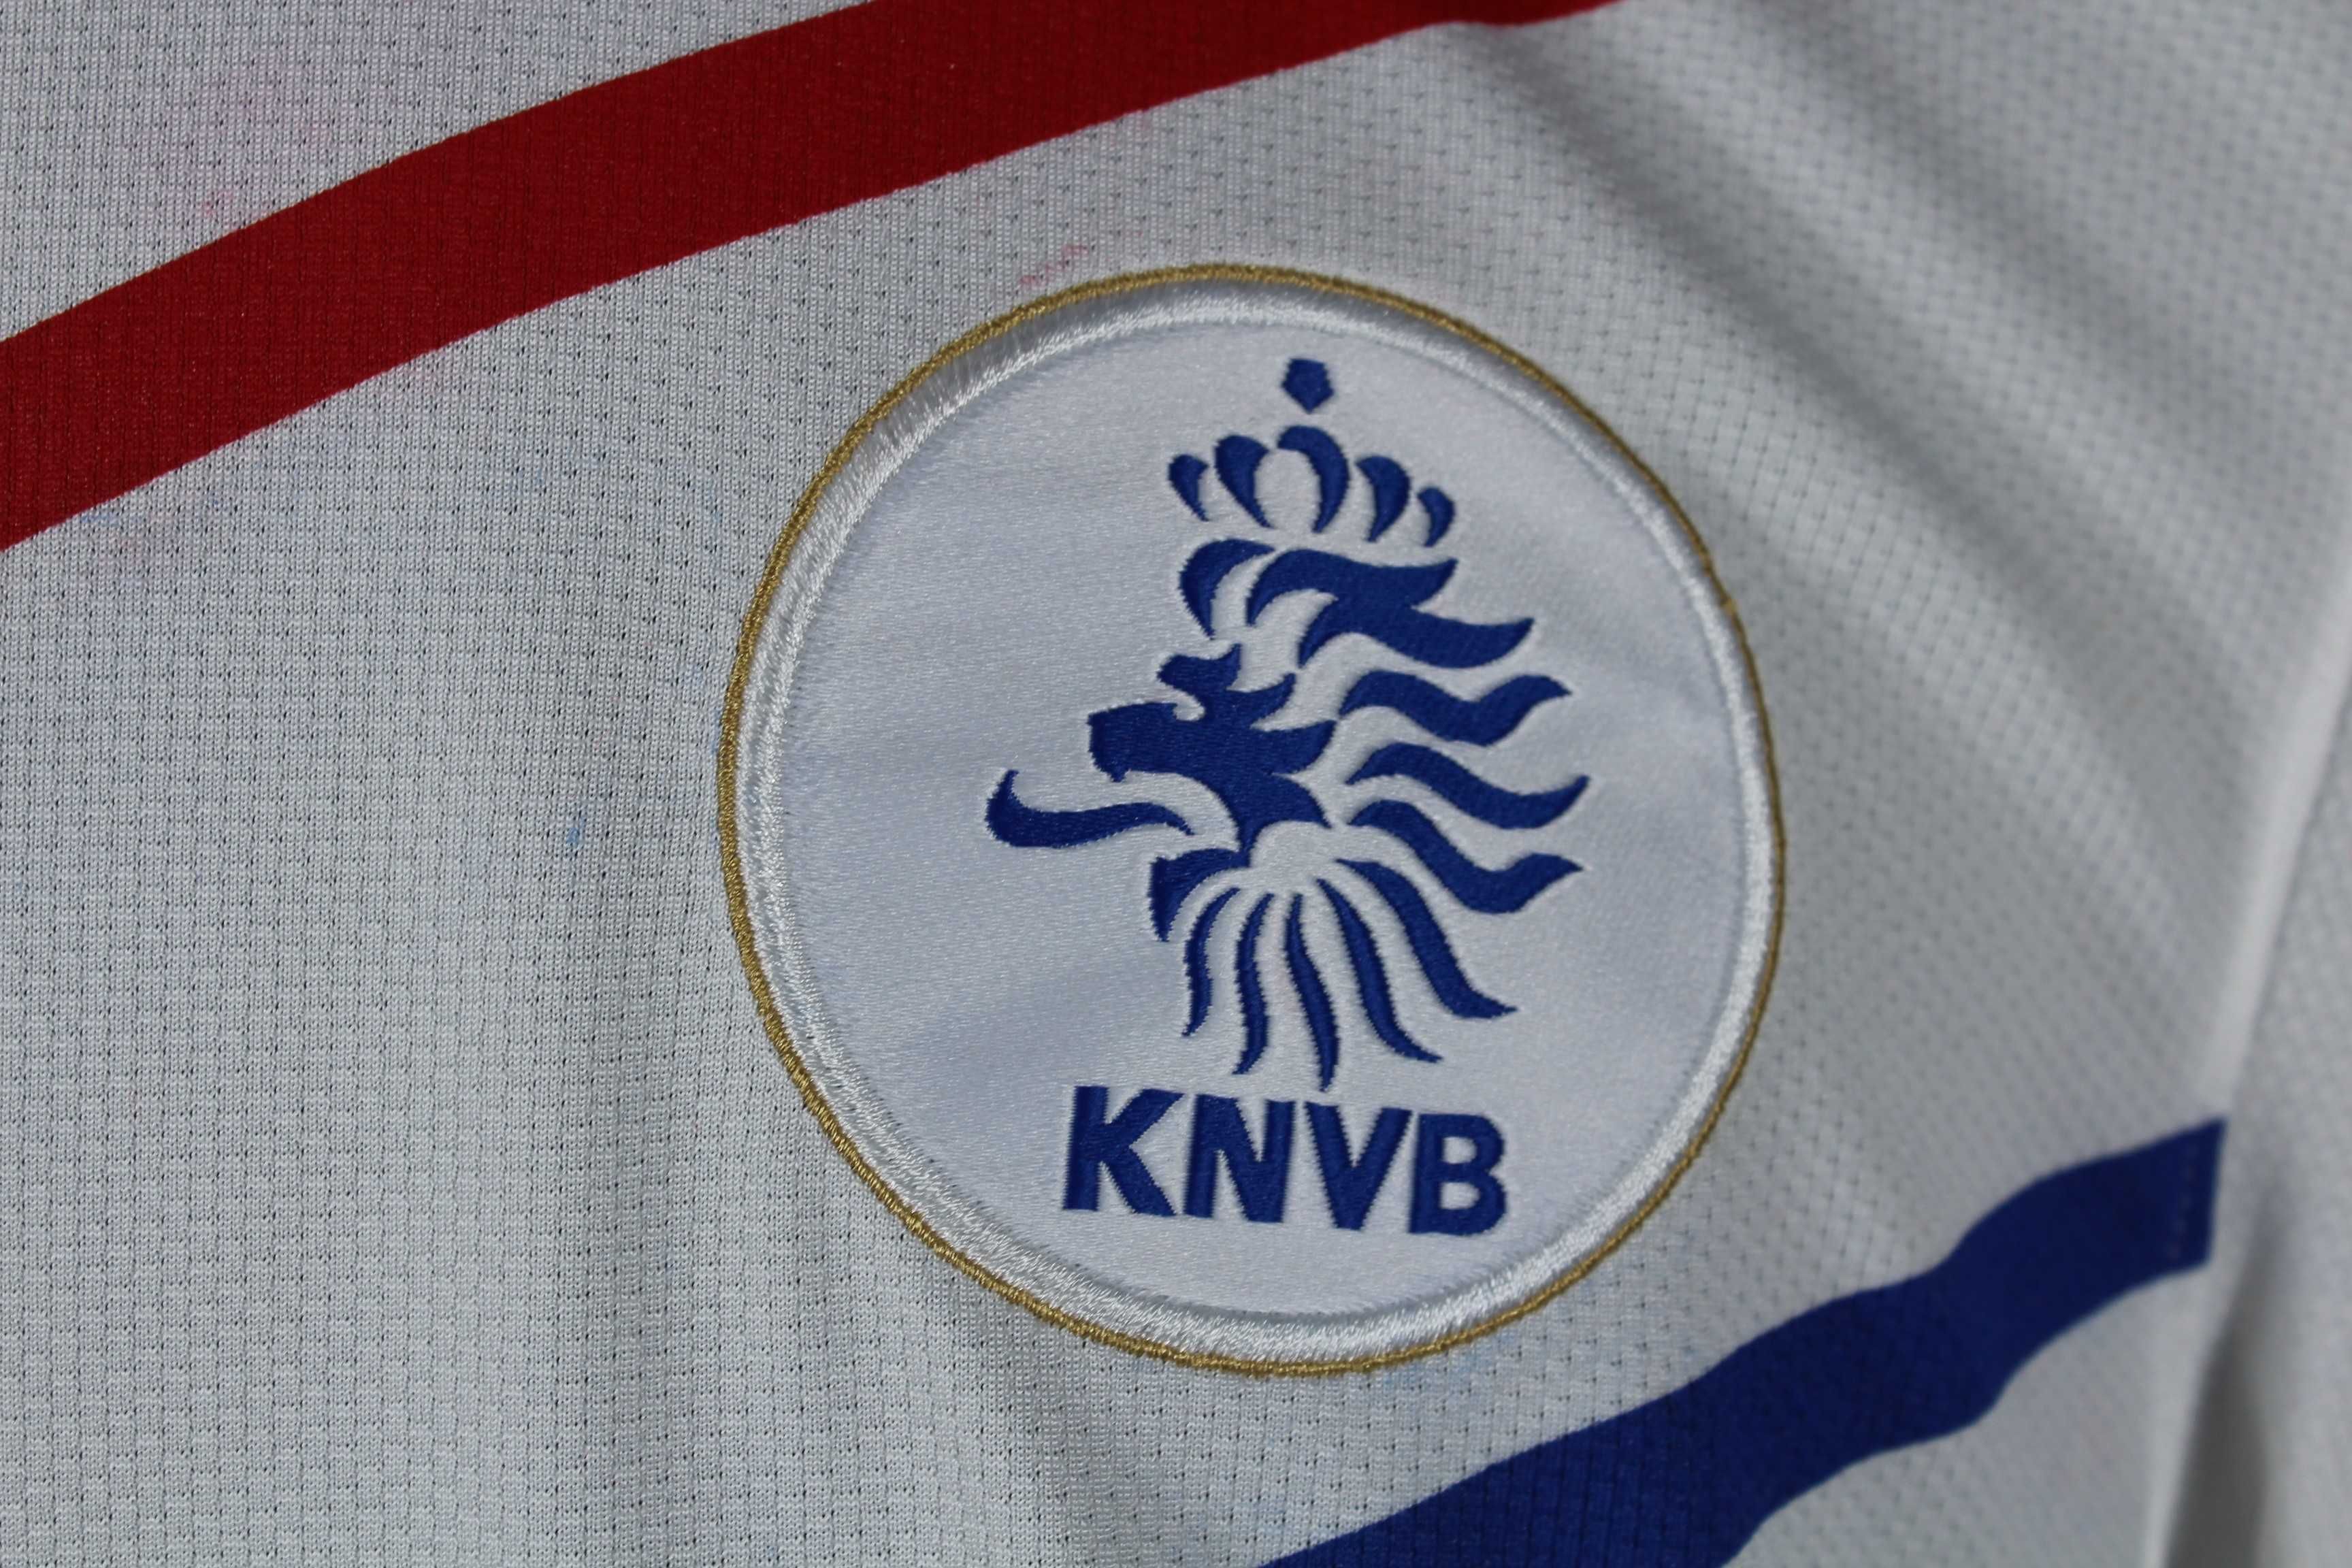 Holandia 2010/12 HUNTELAAR #9 koszulka piłkarska M